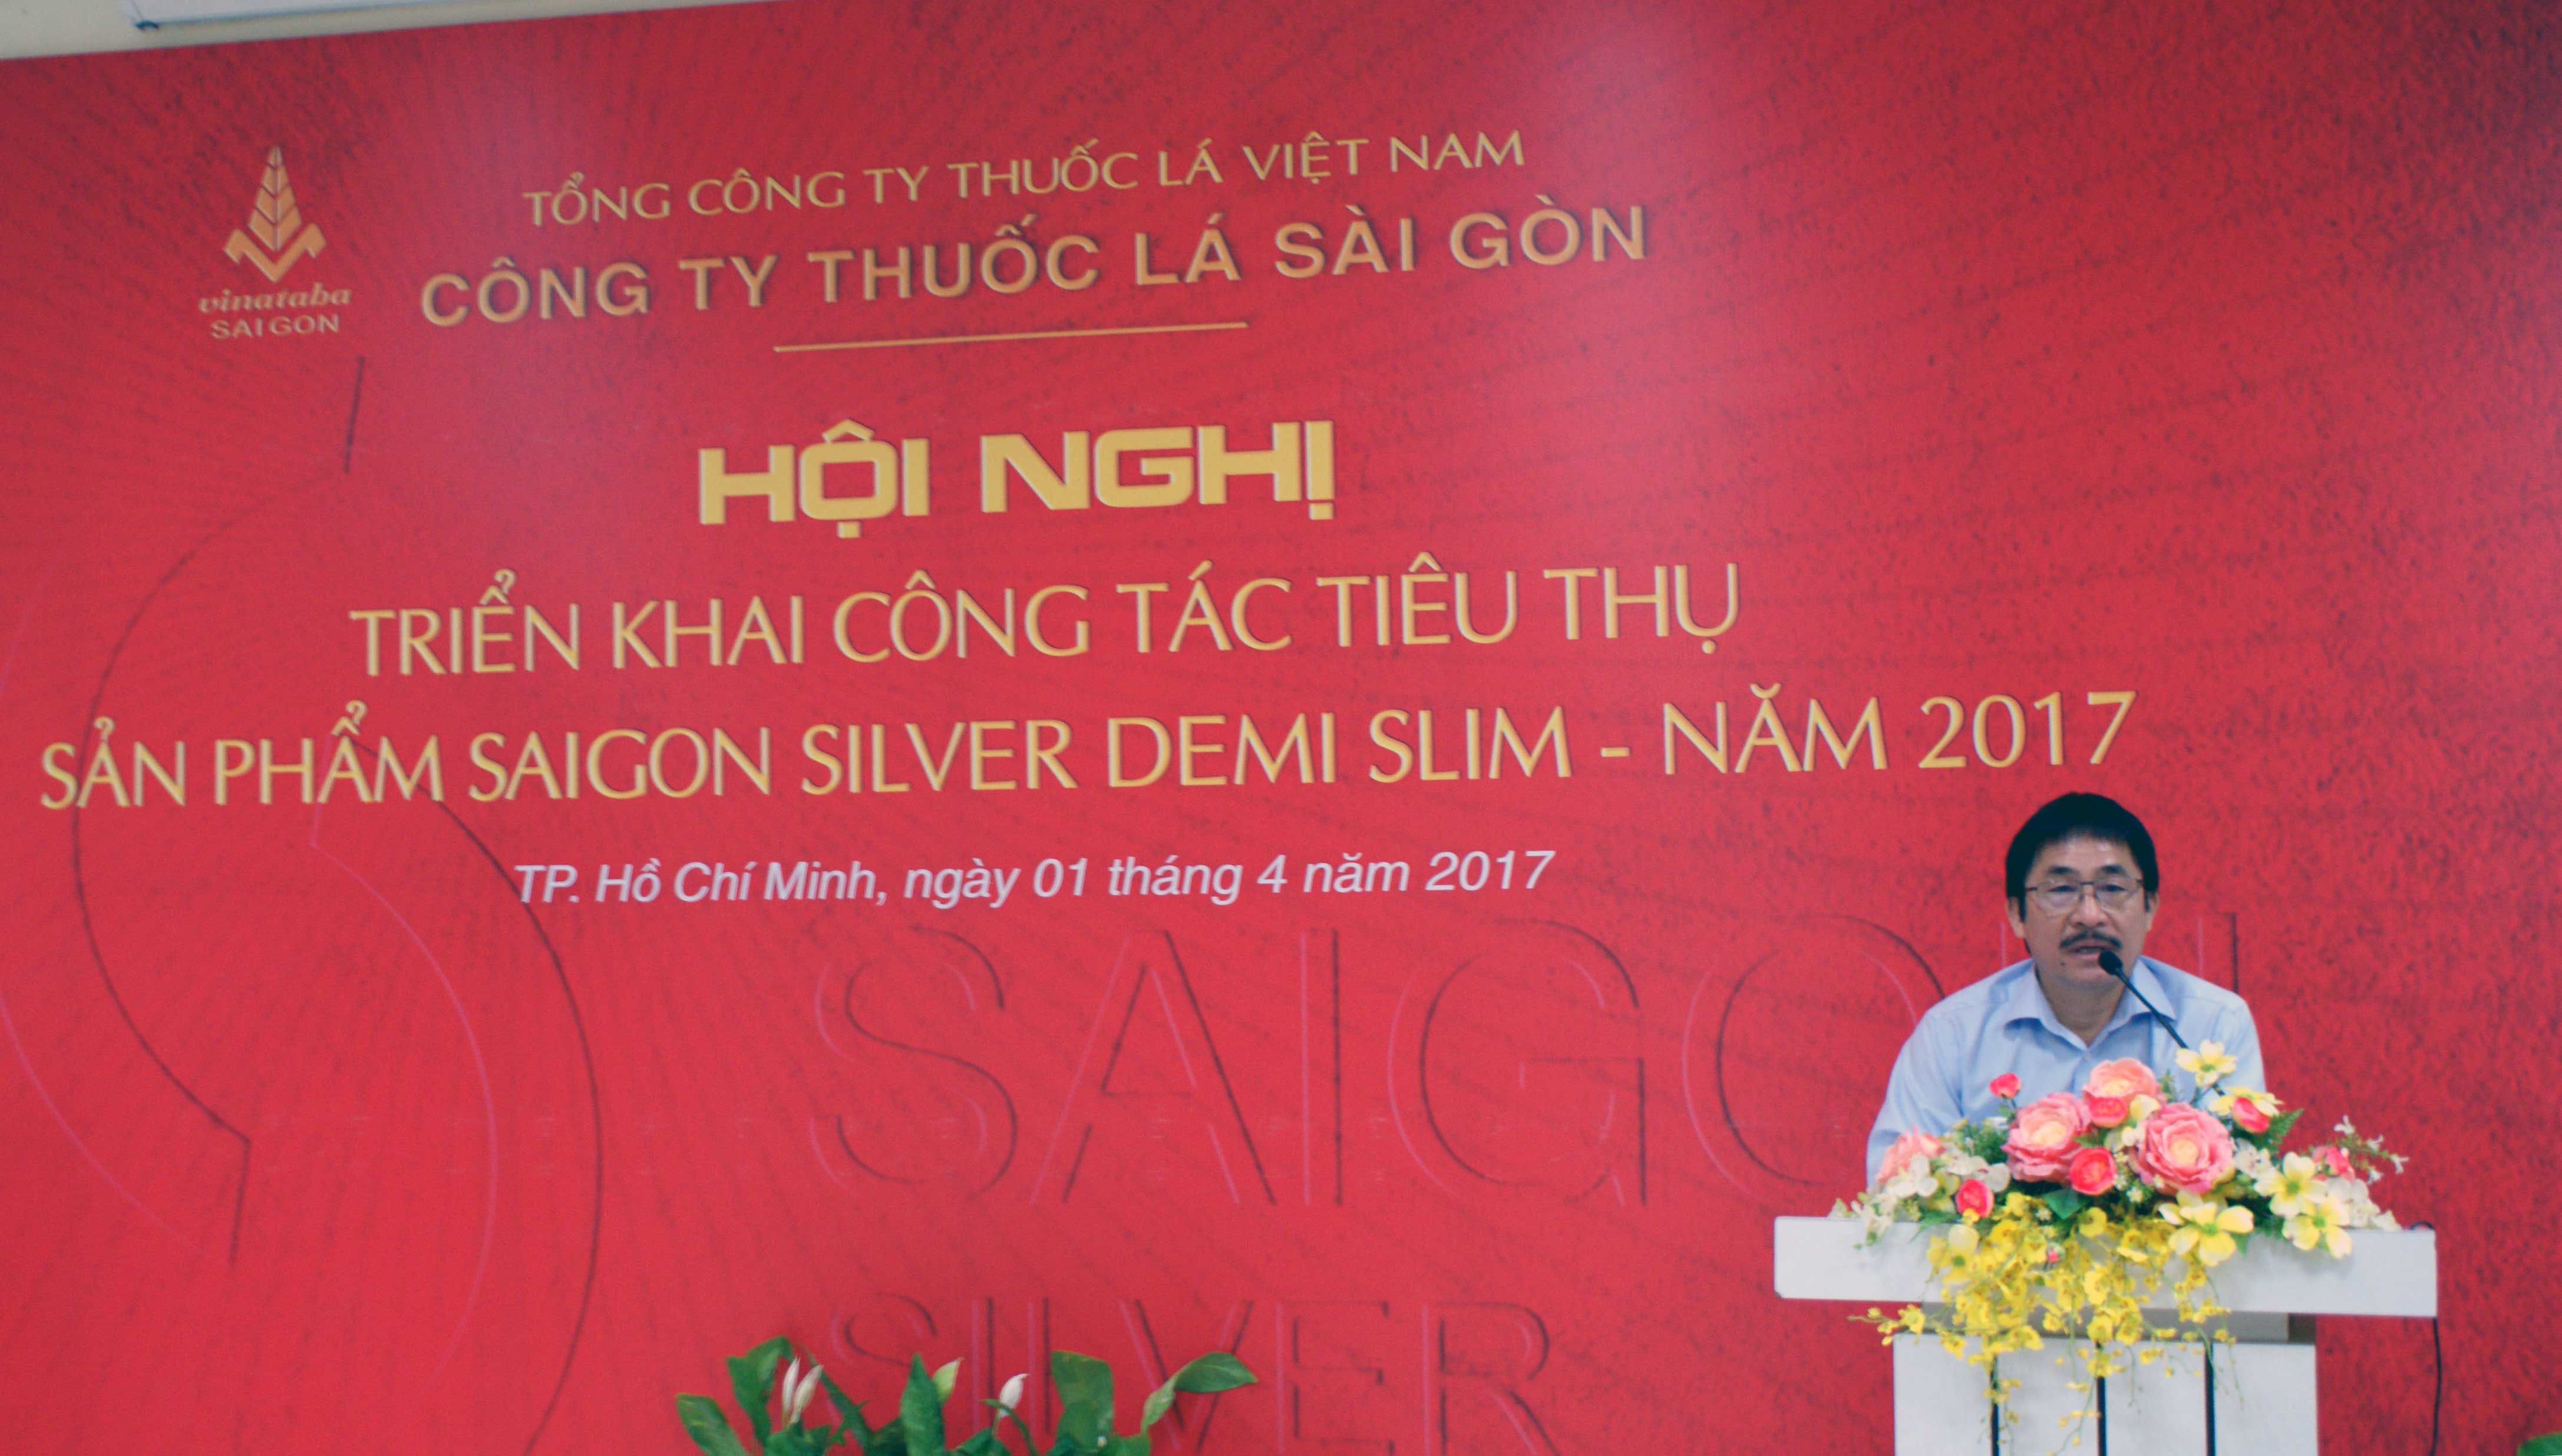 Ông Nguyễn Phương Đông - Chủ tịch Hội đồng thành viên Công ty Thuốc lá Sài Gòn phát biểu tại hội nghị